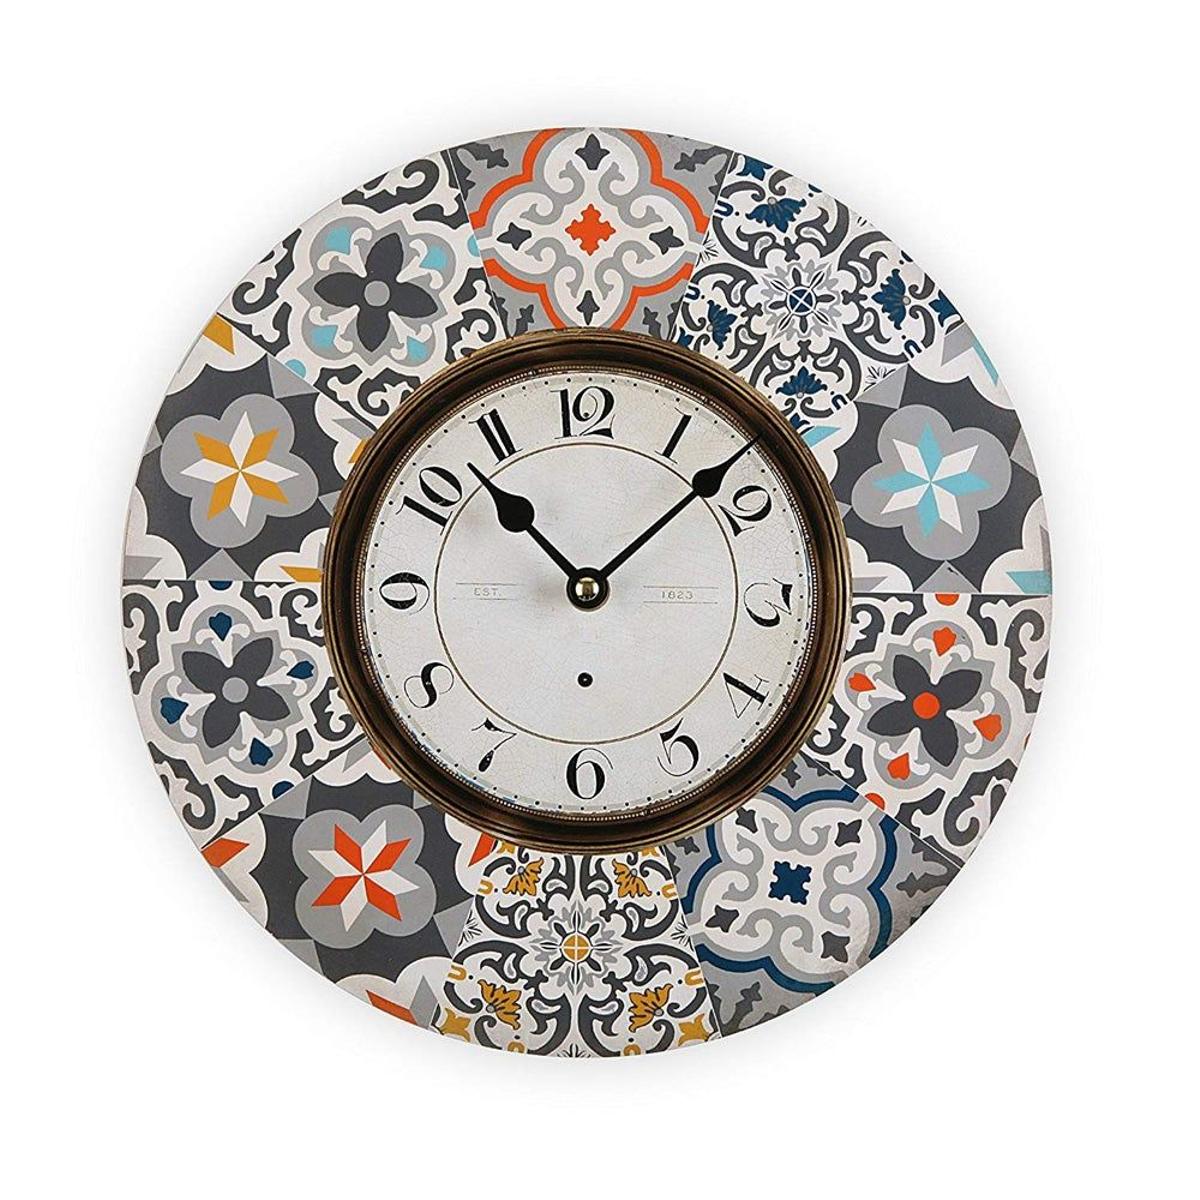 Reloj estilo mosaico (Precio: 11,00 euros)